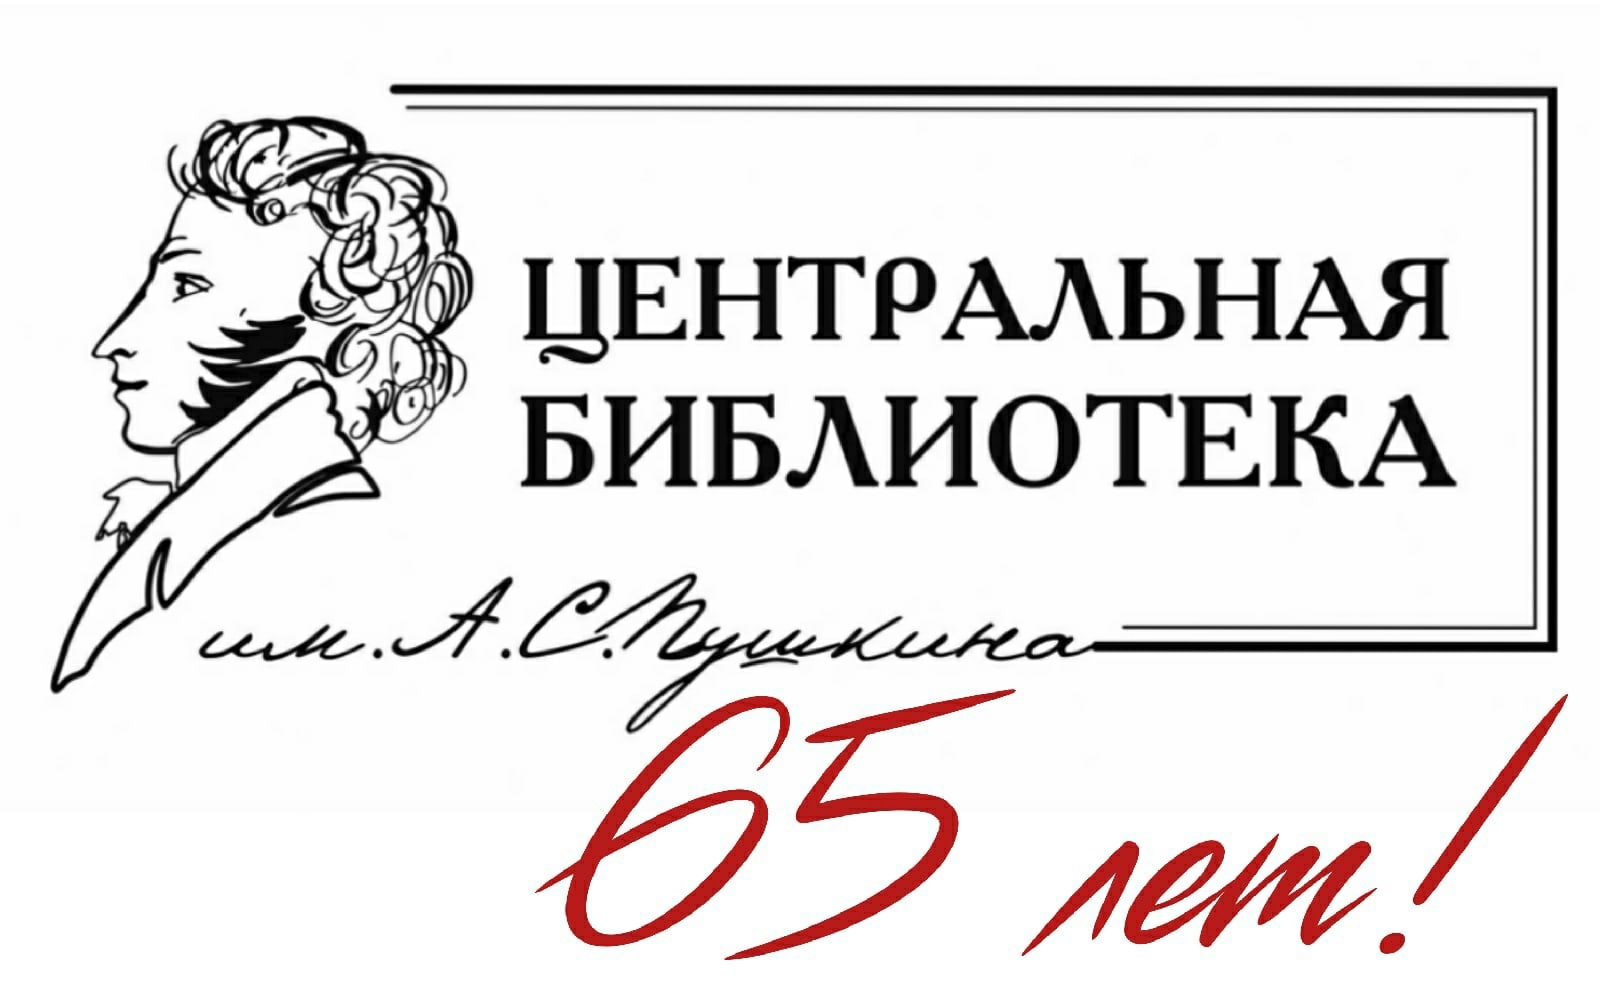 Логотип ЦБ им. А.С. Пушкина